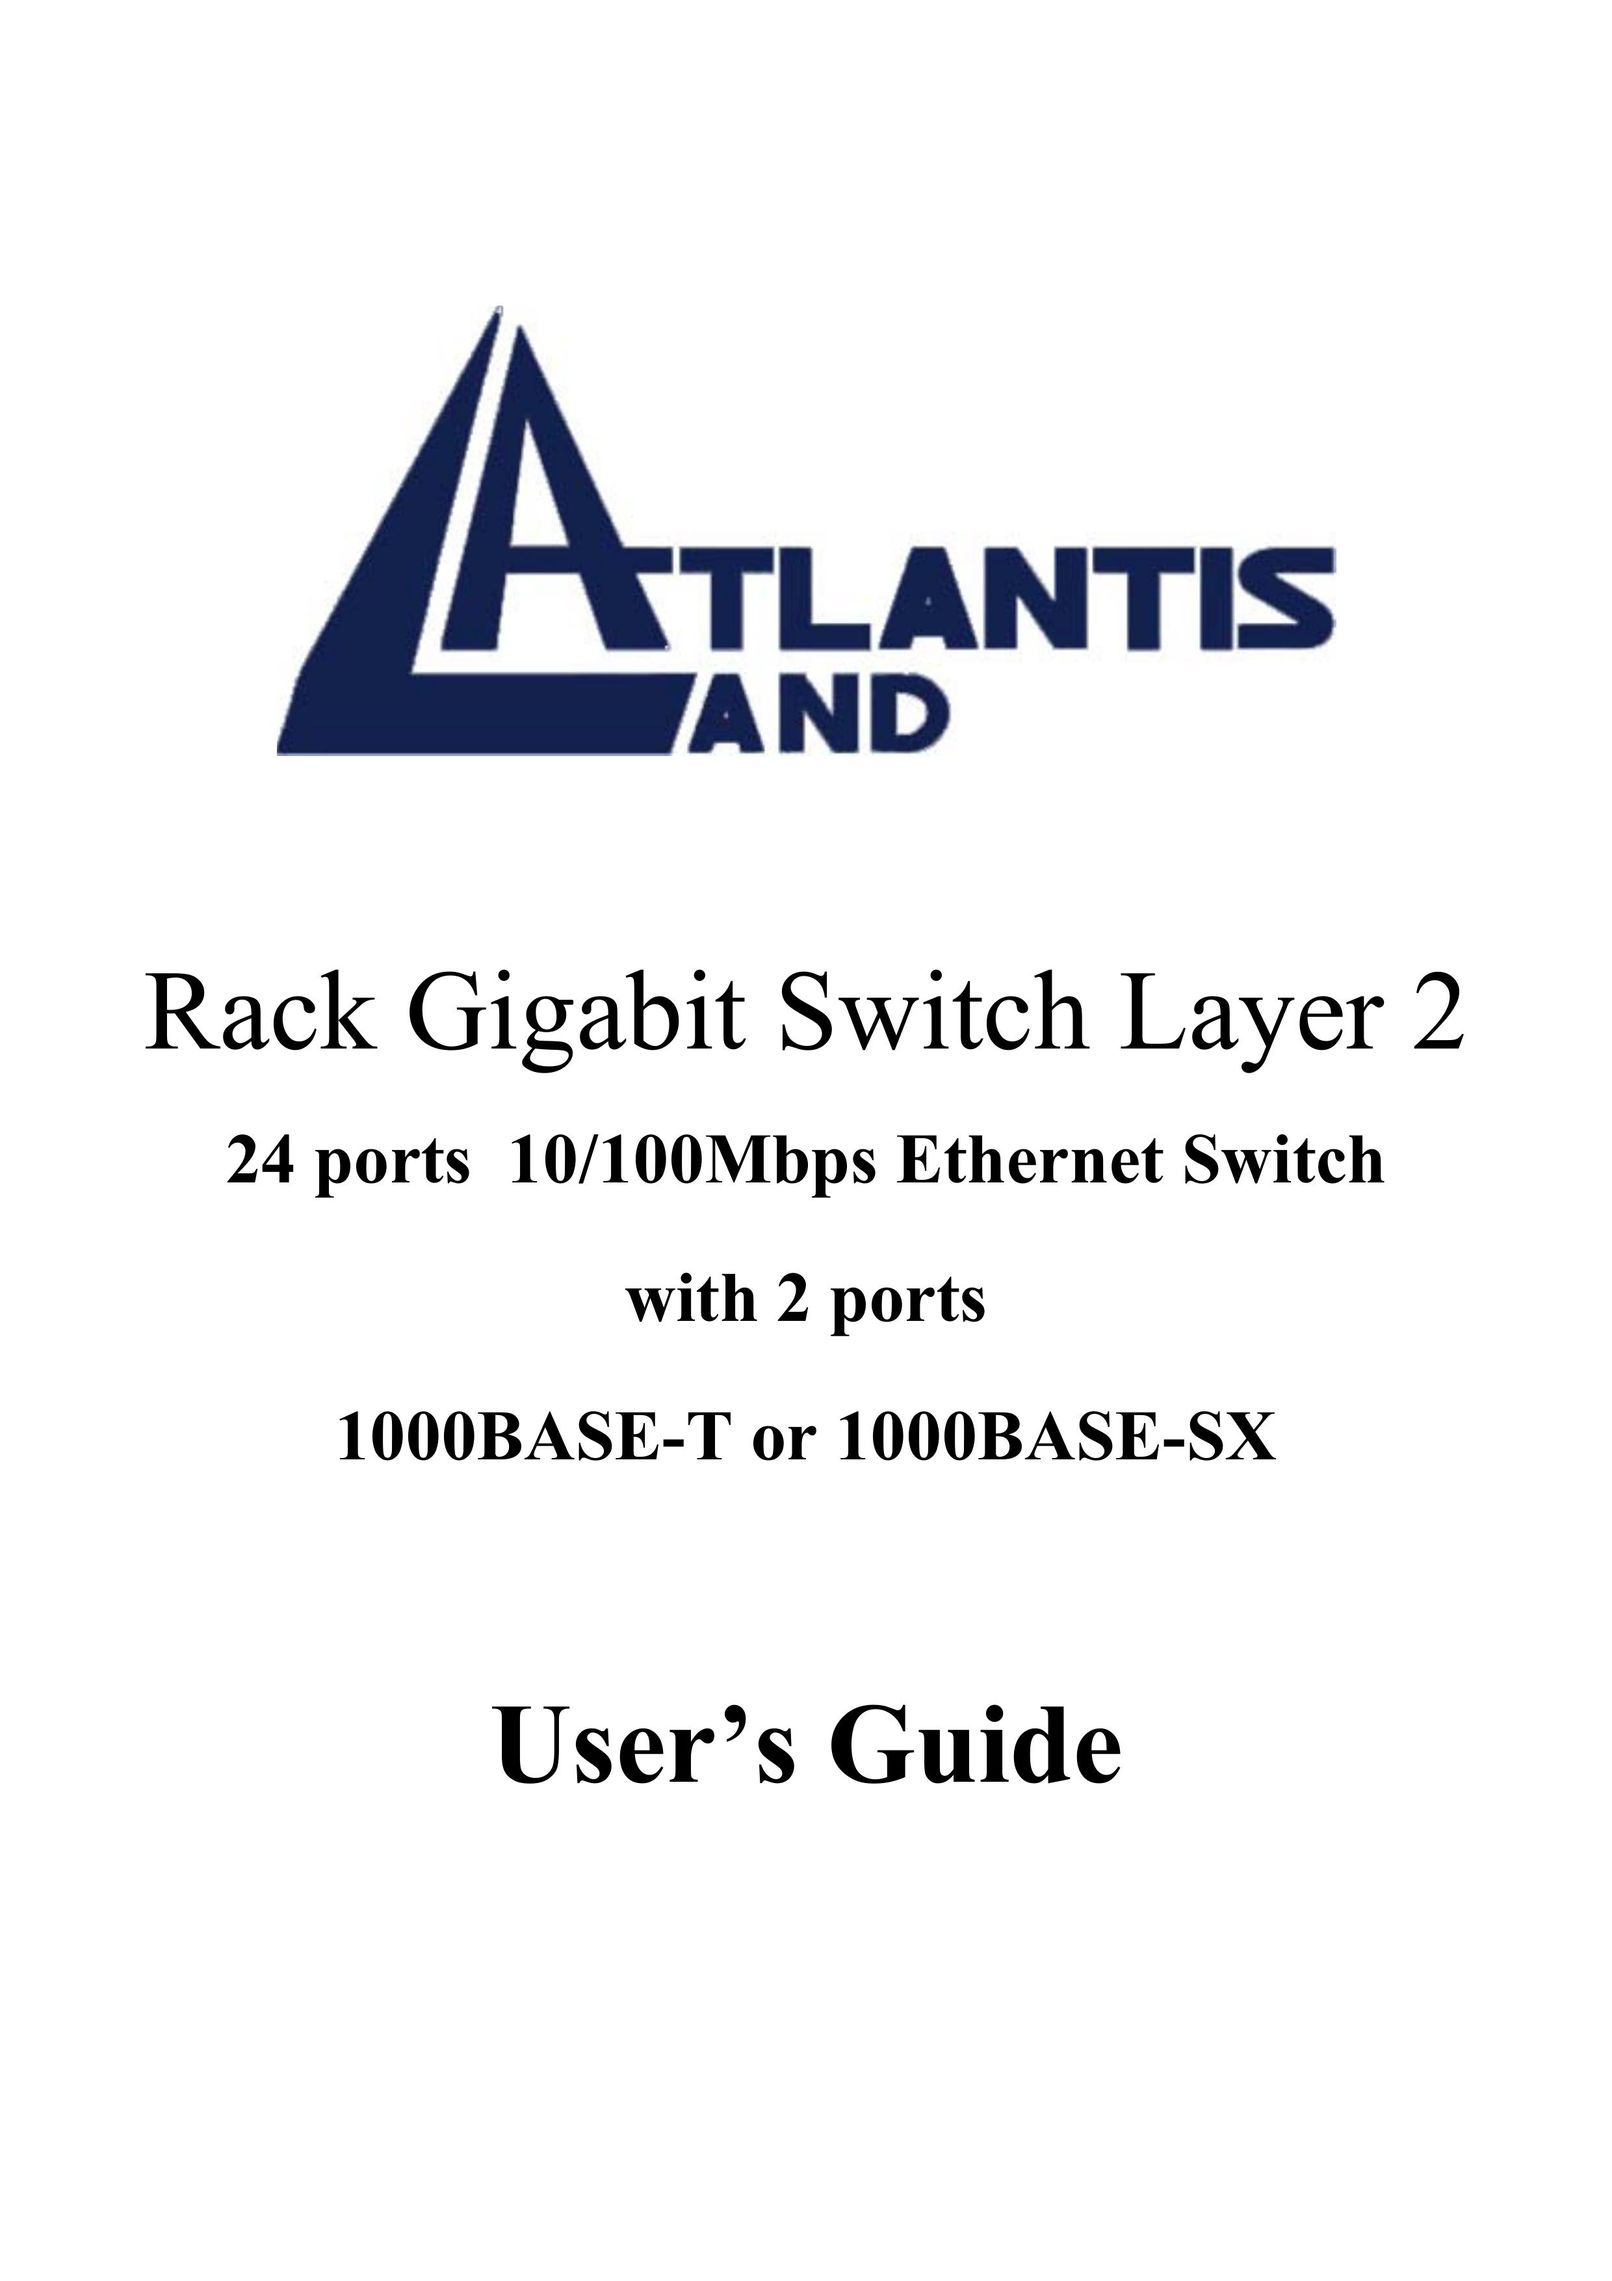 Atlantis Land Rack Gigabit Switch Layer 2 Switch User Manual